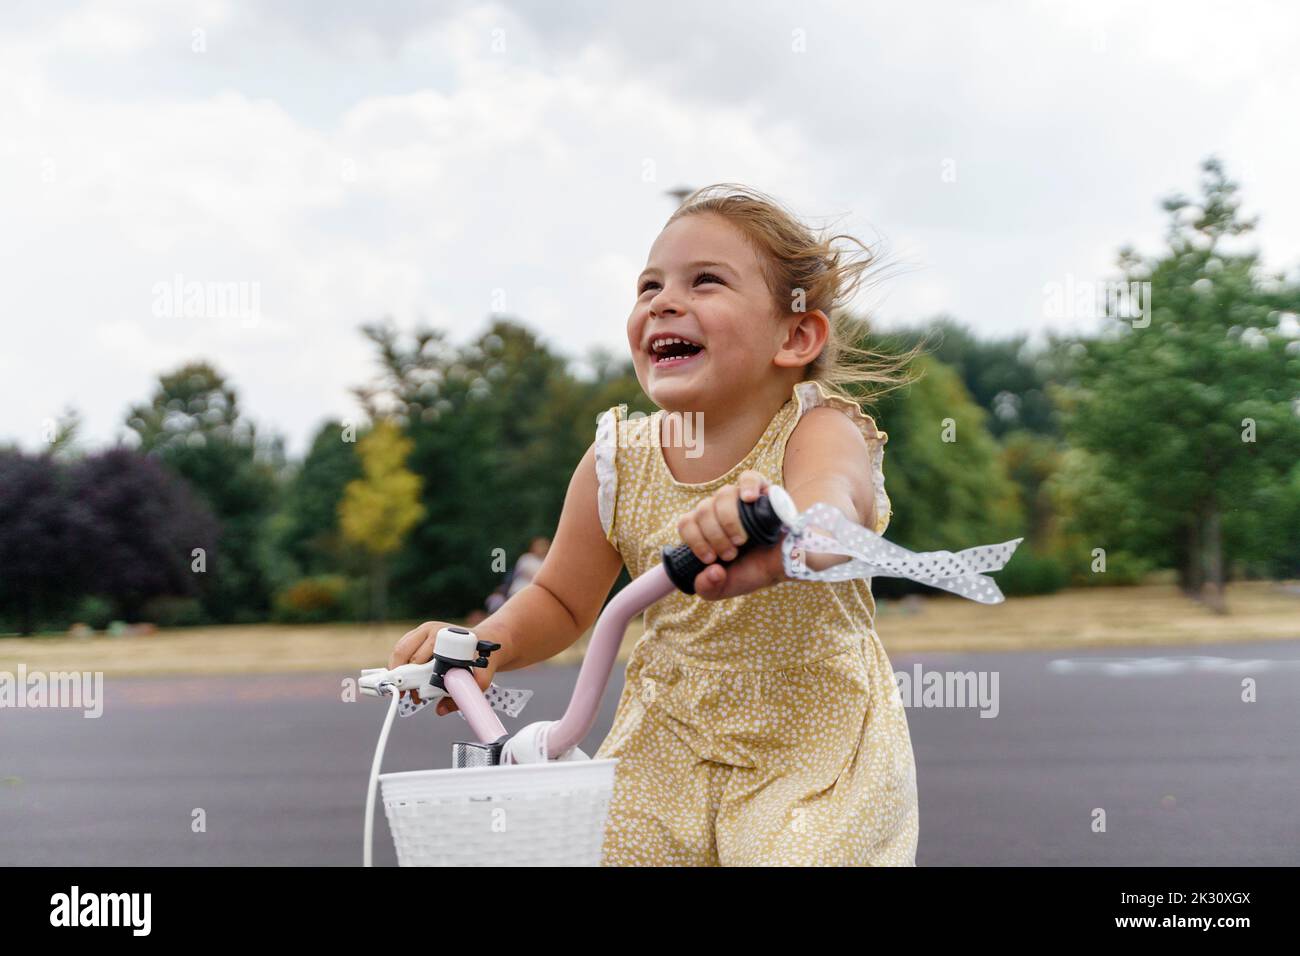 Cheerful girl enjoying cycling at park Stock Photo